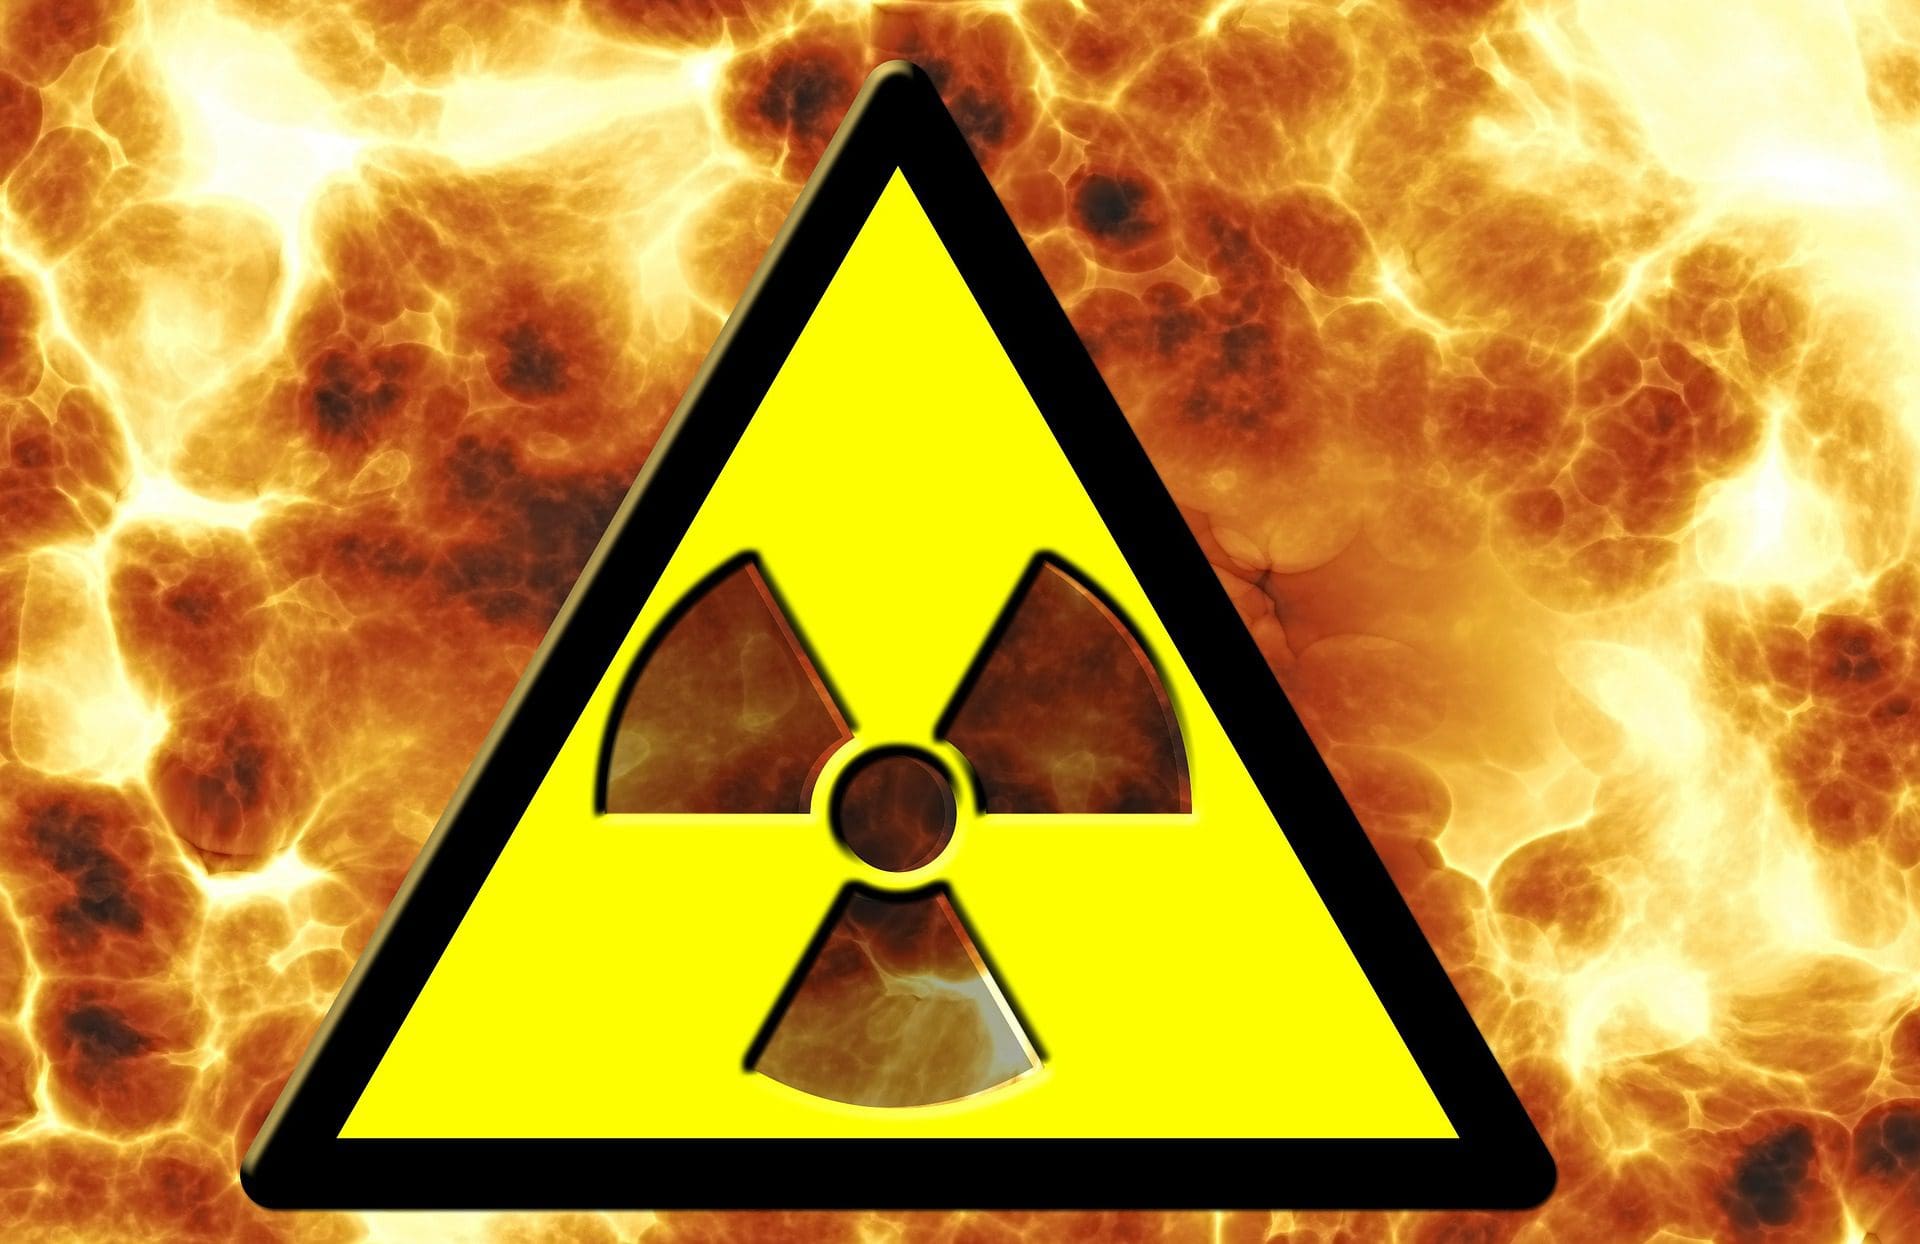 gibt-es-radioaktivitaet-durch-uranmunition-in-der-ukraine?